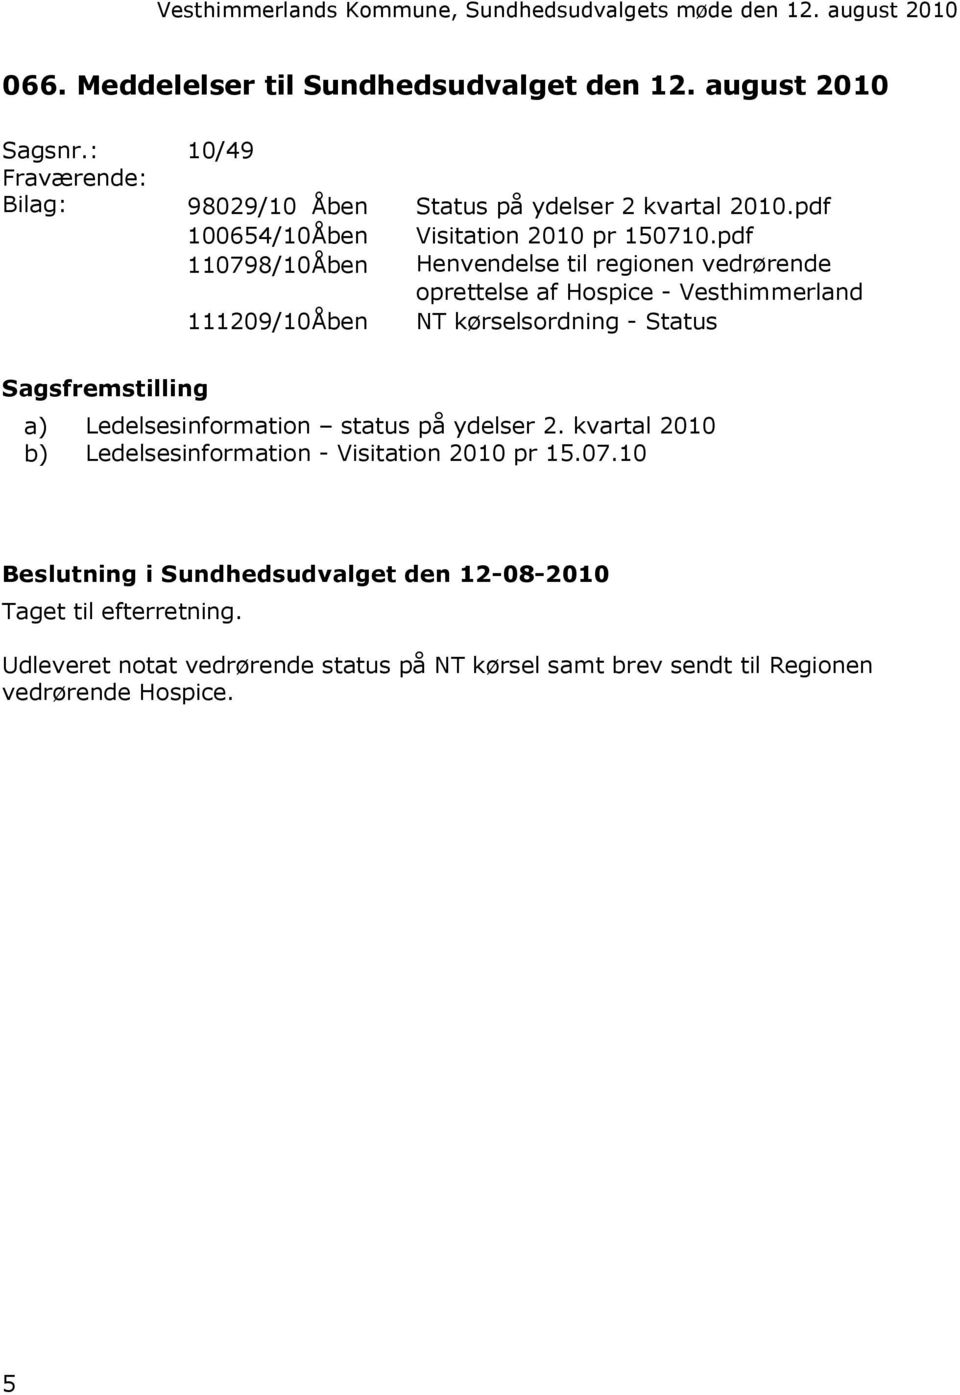 pdf 110798/10Åben Henvendelse til regionen vedrørende oprettelse af Hospice - Vesthimmerland 111209/10Åben NT kørselsordning - Status Sagsfremstilling